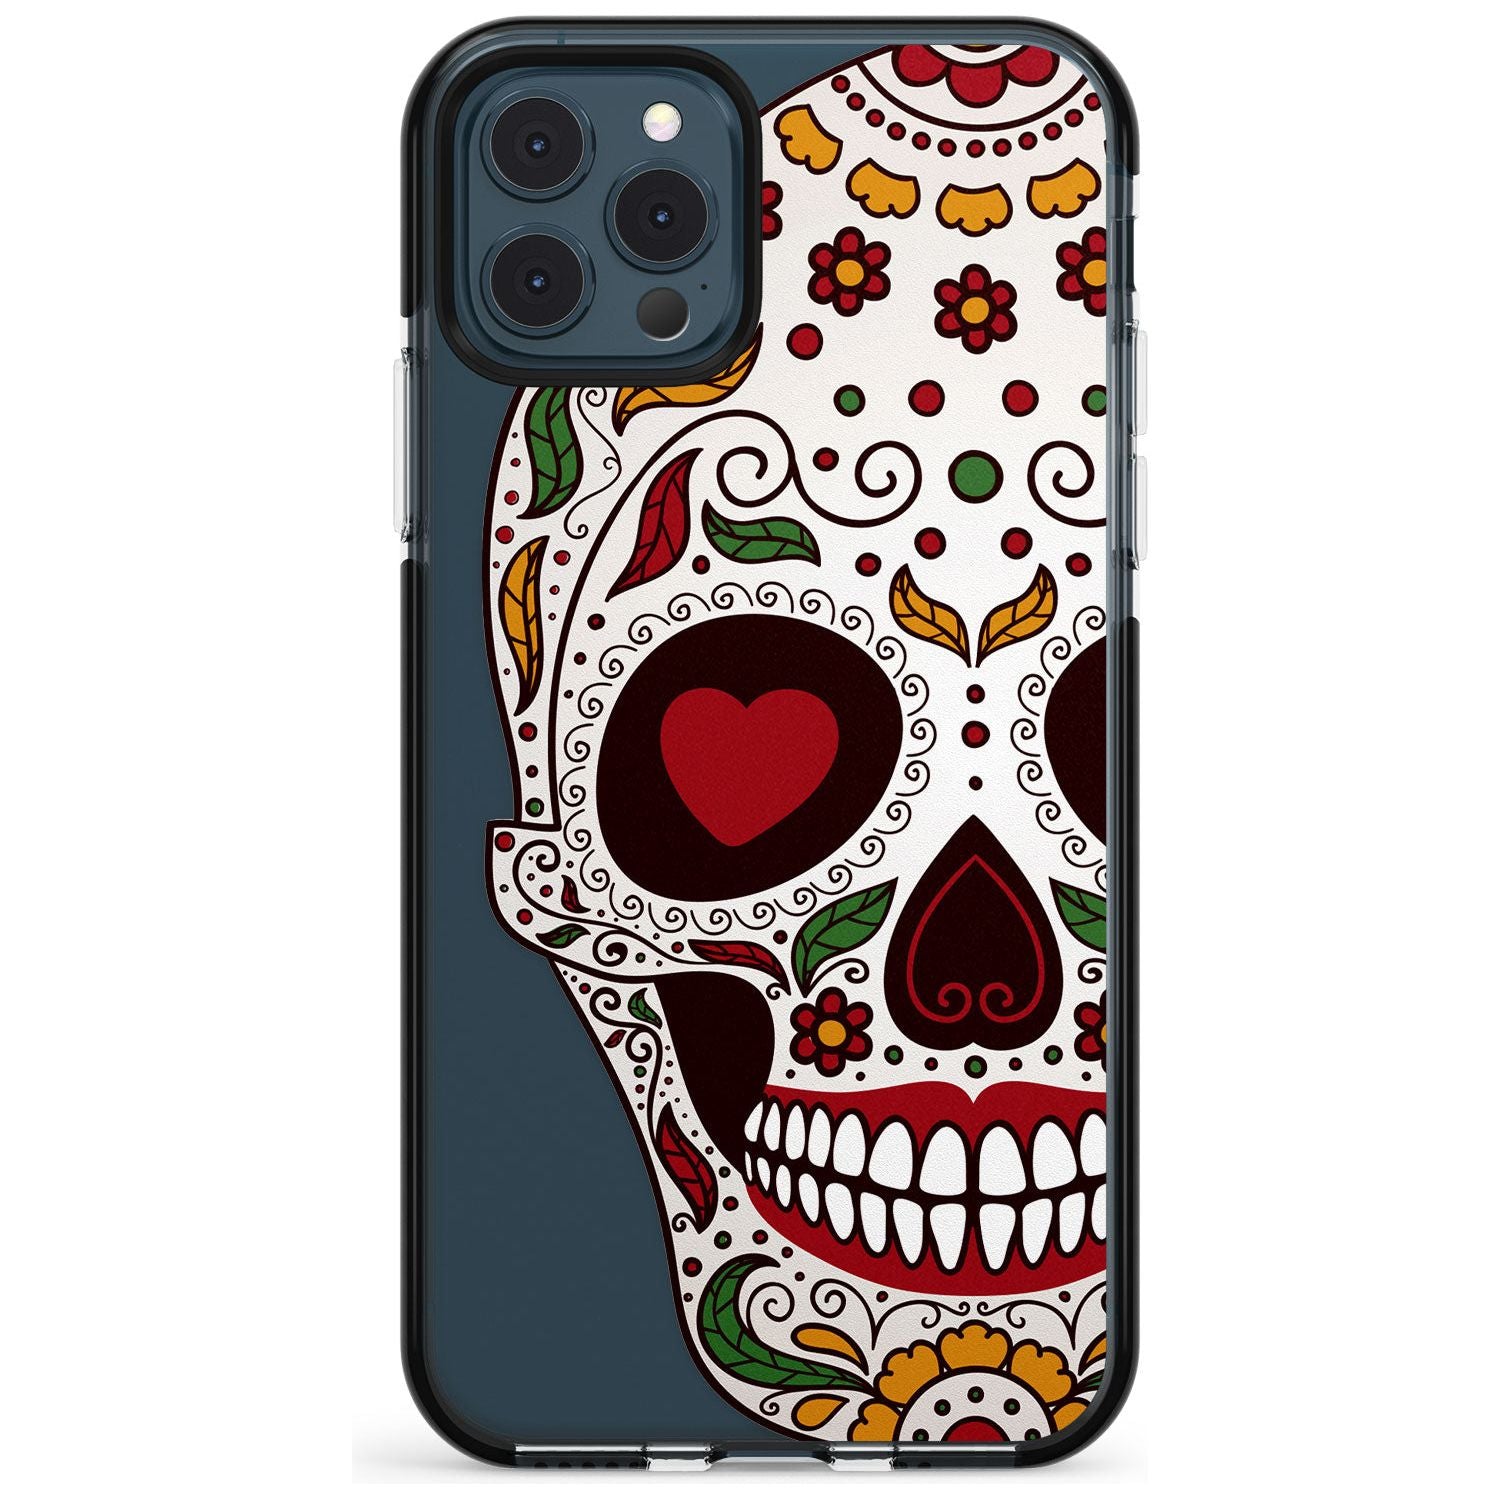 Autumn Sugar Skull Black Impact Phone Case for iPhone 11